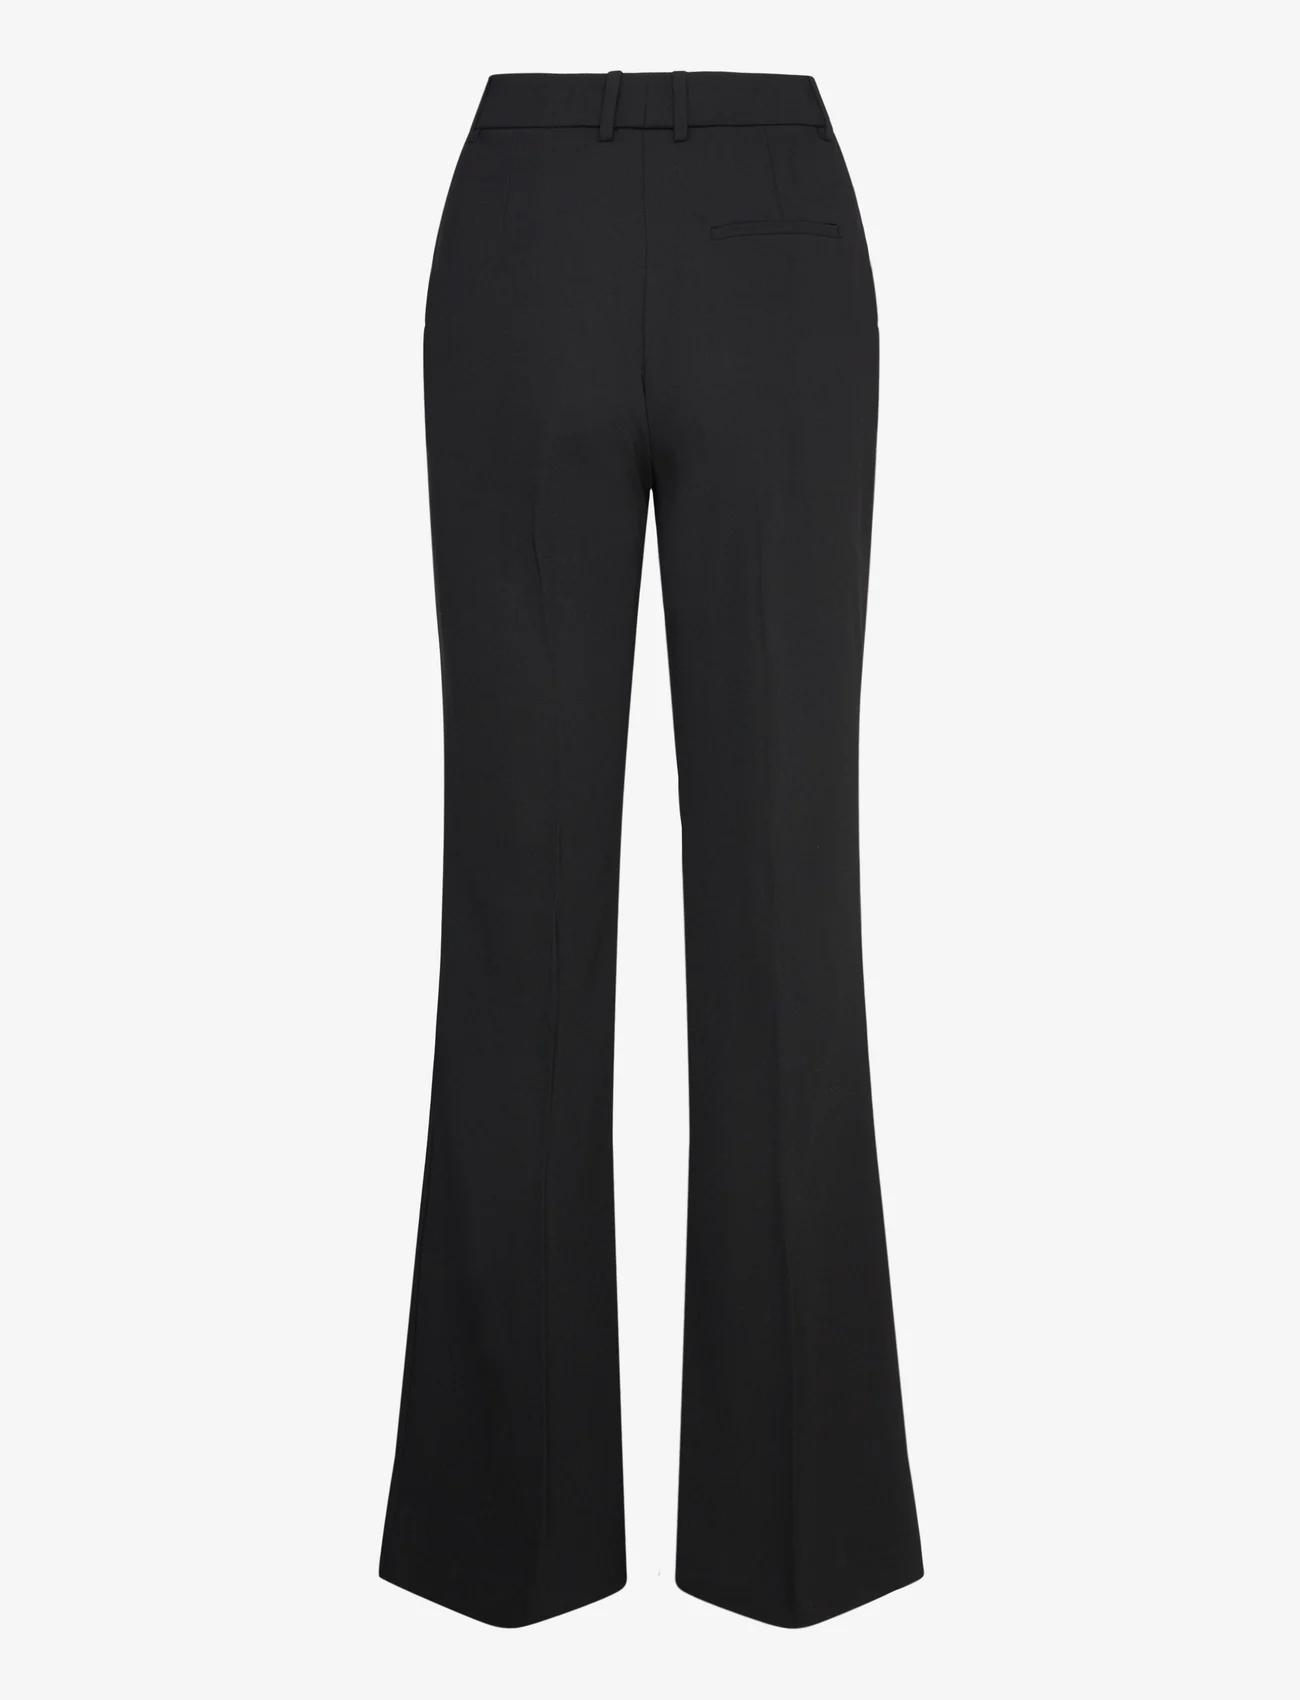 Mango - Flared trouser suit - habitbukser - black - 1